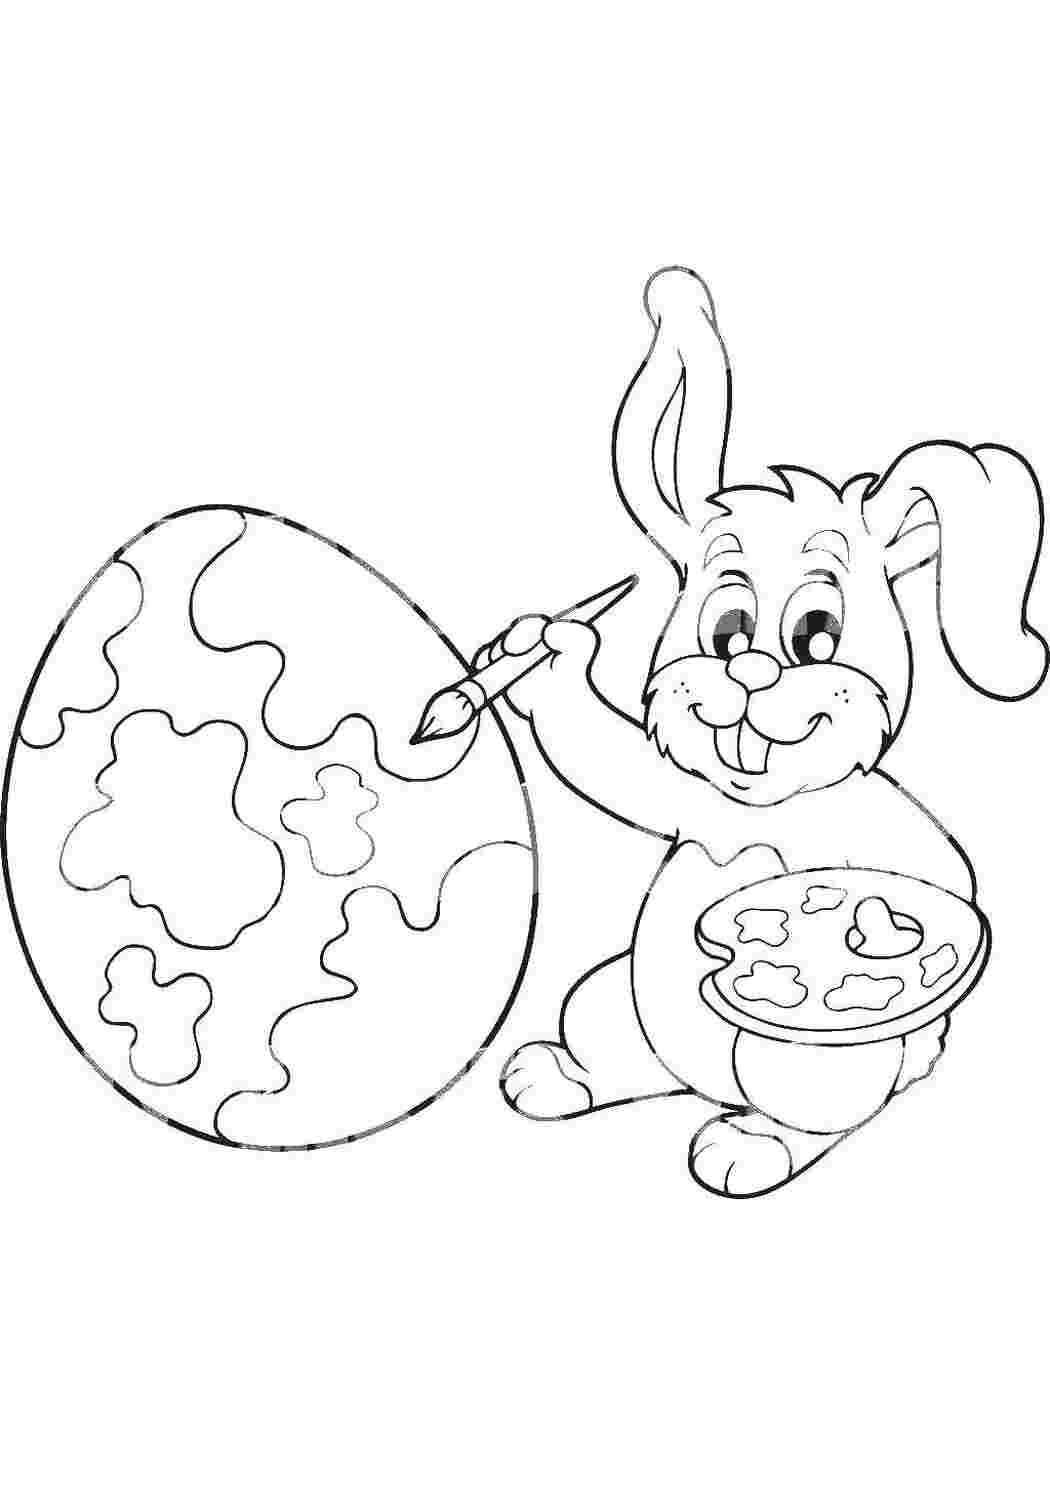 Раскраски Кролик раскрашивает пасхальное яйцо раскраски пасха пасха, яйца, кролик